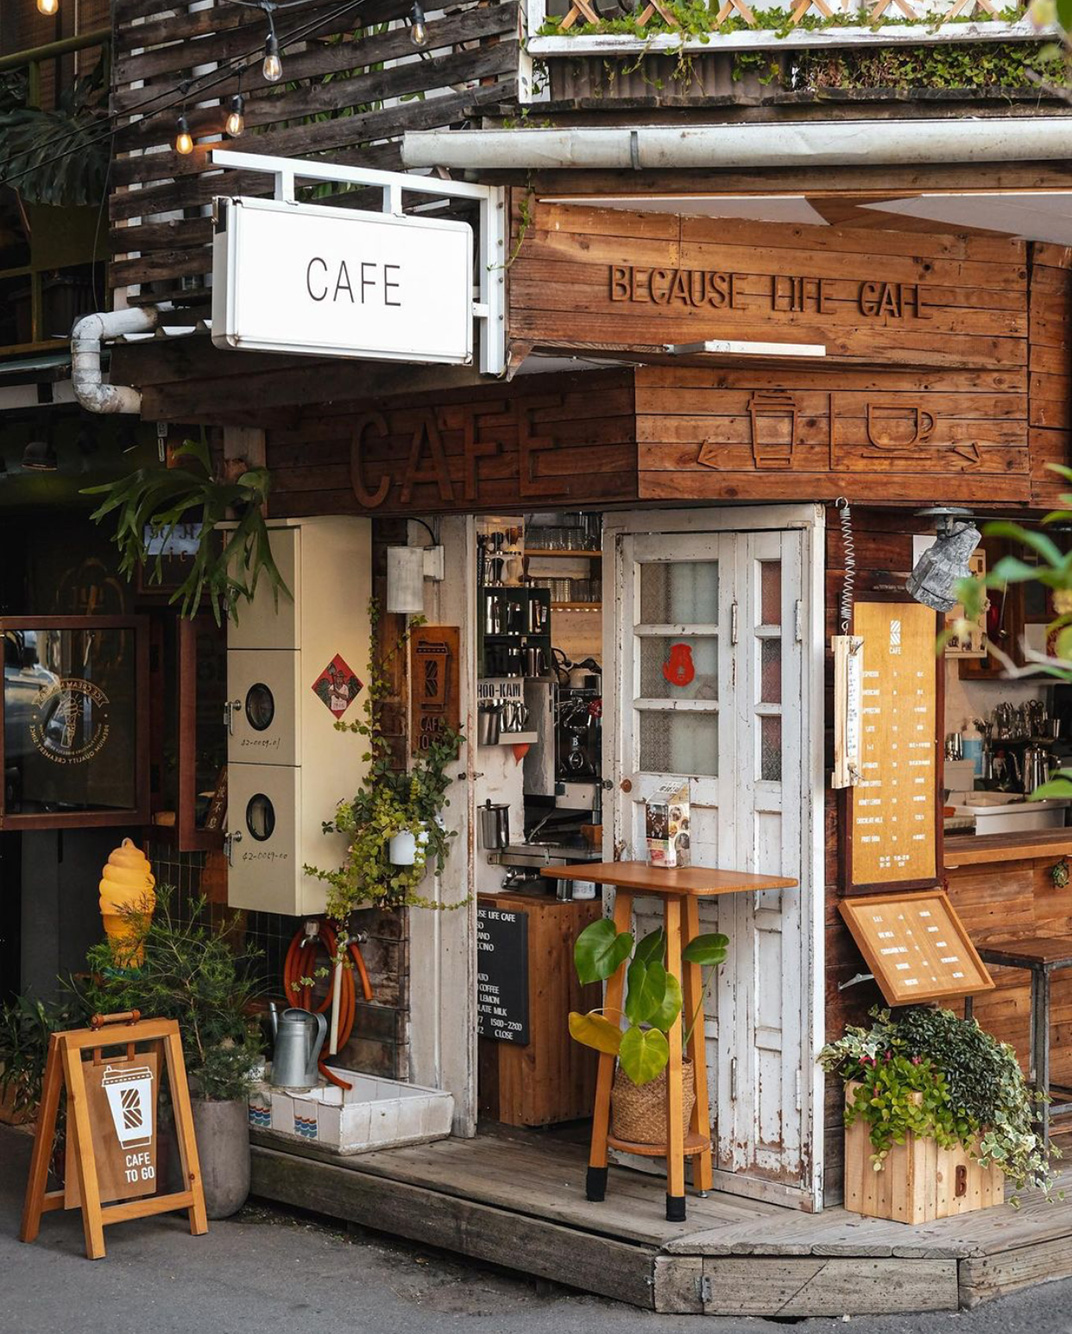 火车站附近复古咖啡店Because Life Cafe 台湾 上海 咖啡店 复古 木质 街区 logo设计 vi设计 空间设计